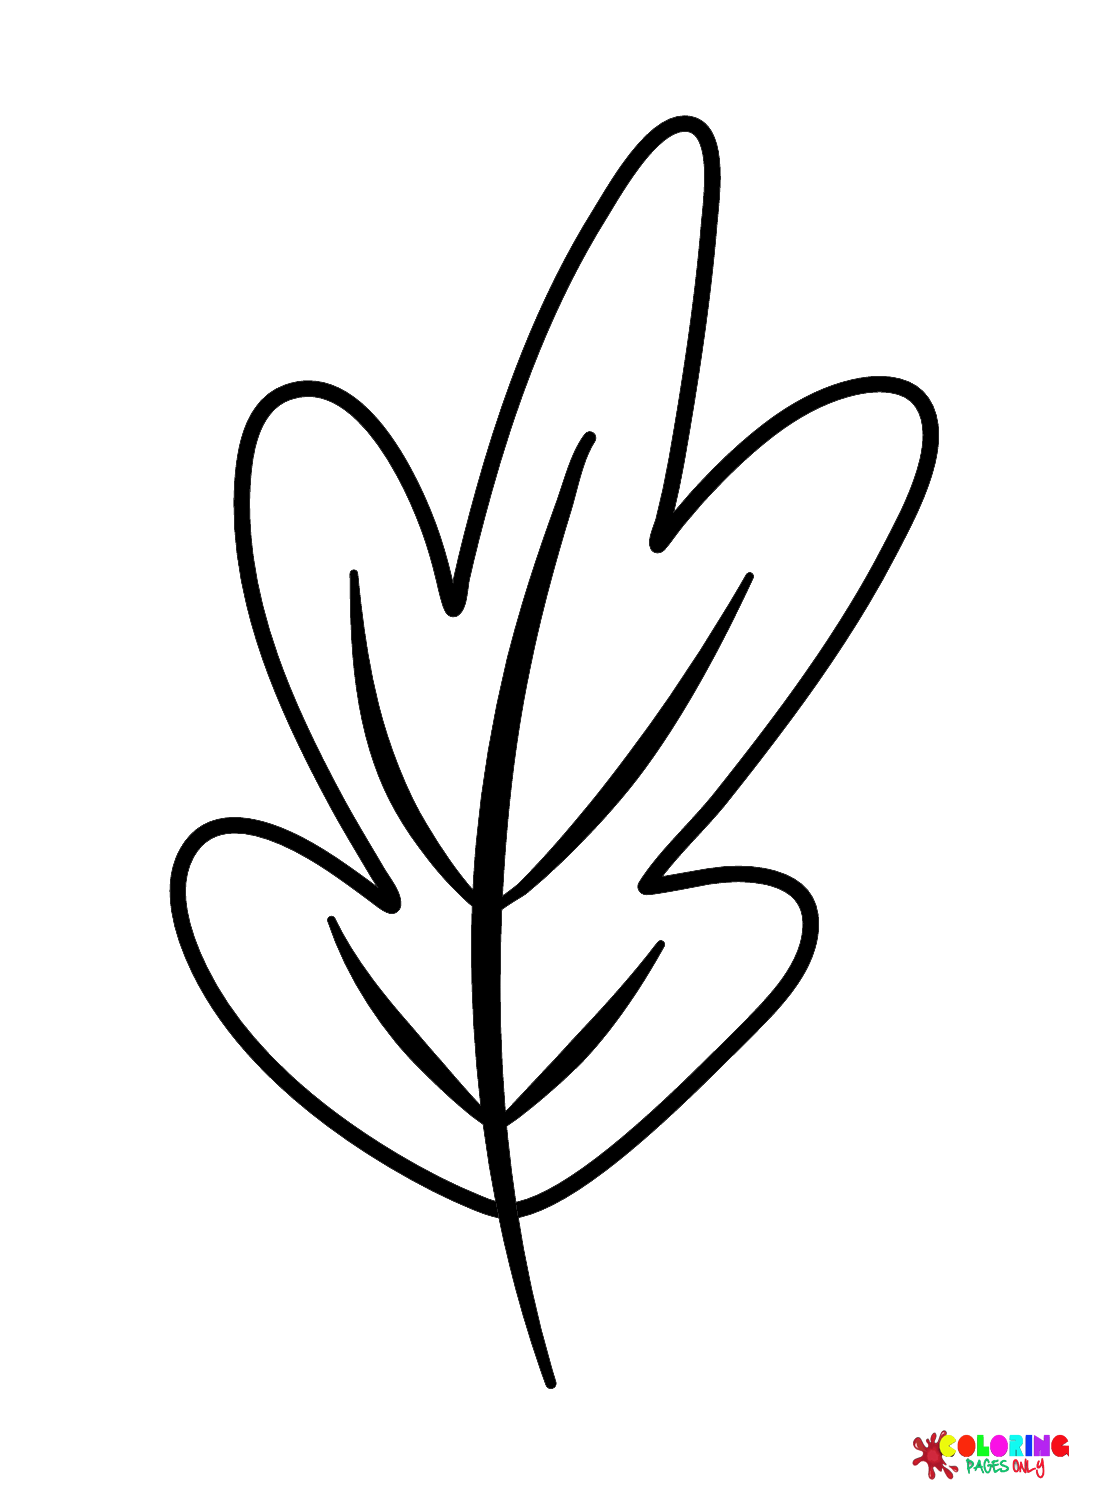 Simple leaf illustration - Stock Illustration [83092136] - PIXTA